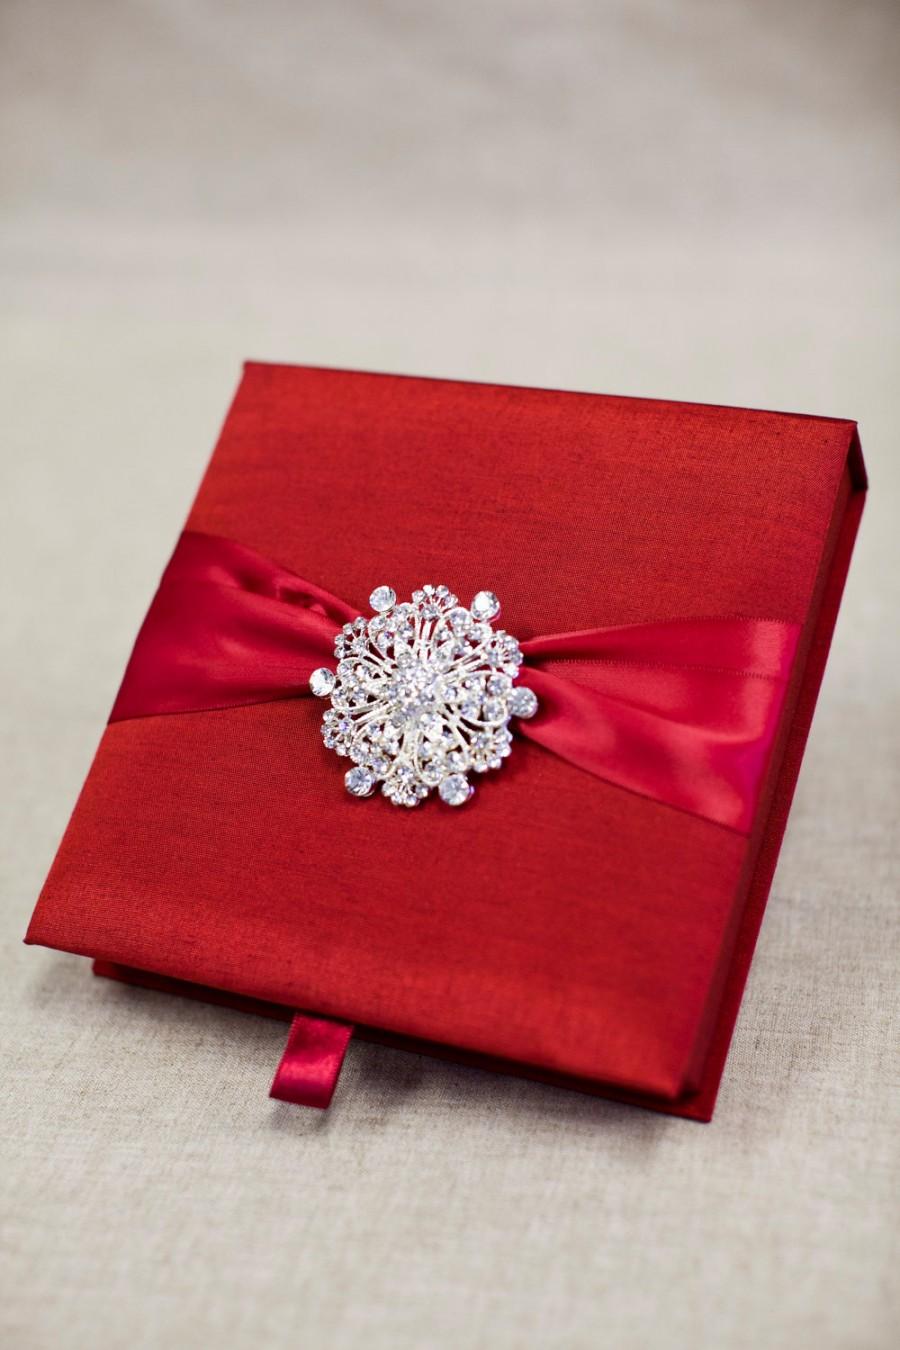 Hochzeit - Wedding Invitation Silk Fabric Box with Satin Ribbon and a Shimmery Rhinestone Brooch